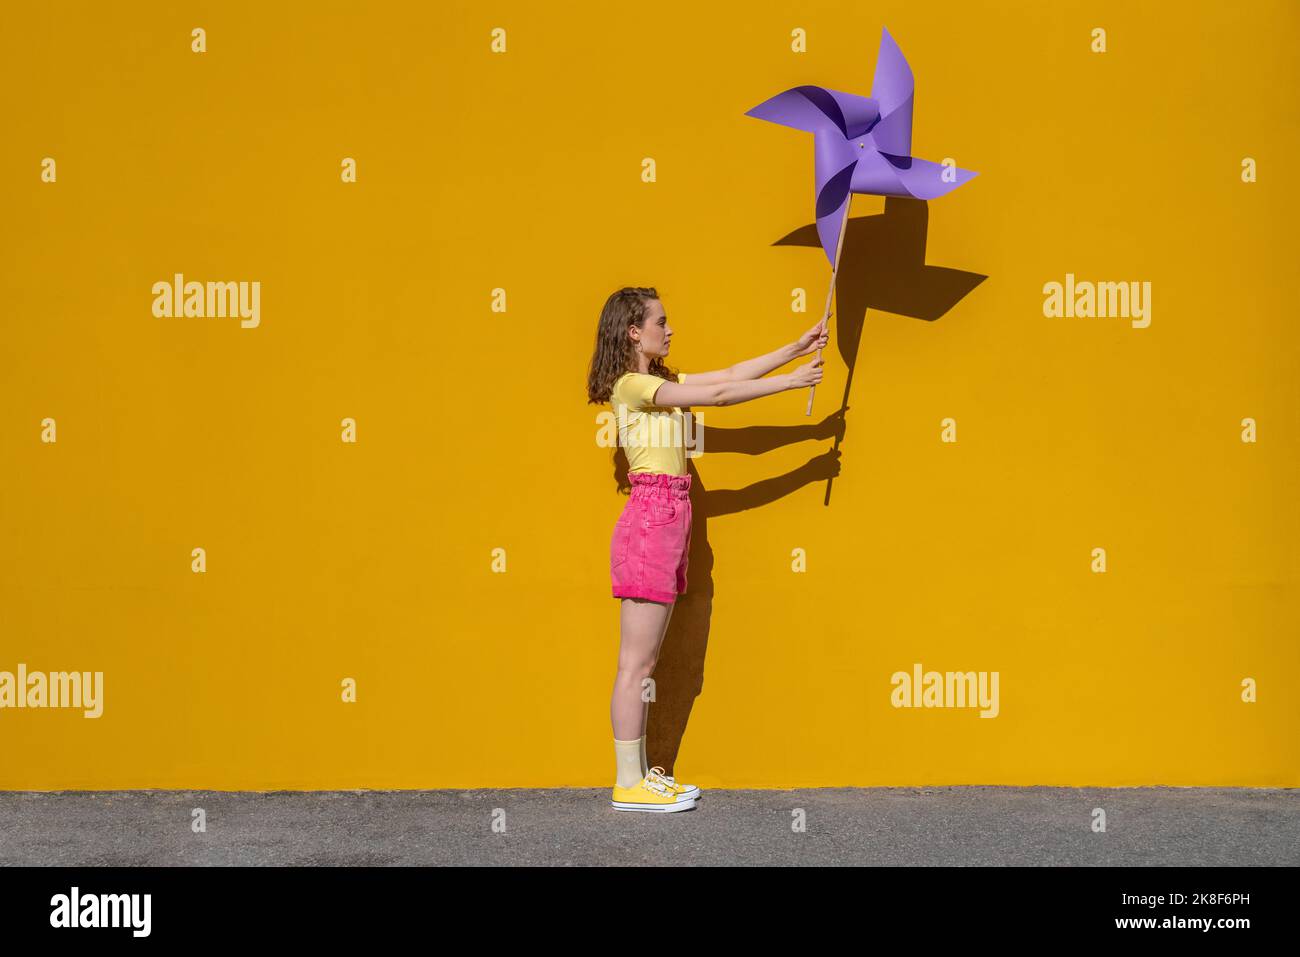 Femme tenant un jouet de roue d'épingle debout devant un mur jaune vif Banque D'Images